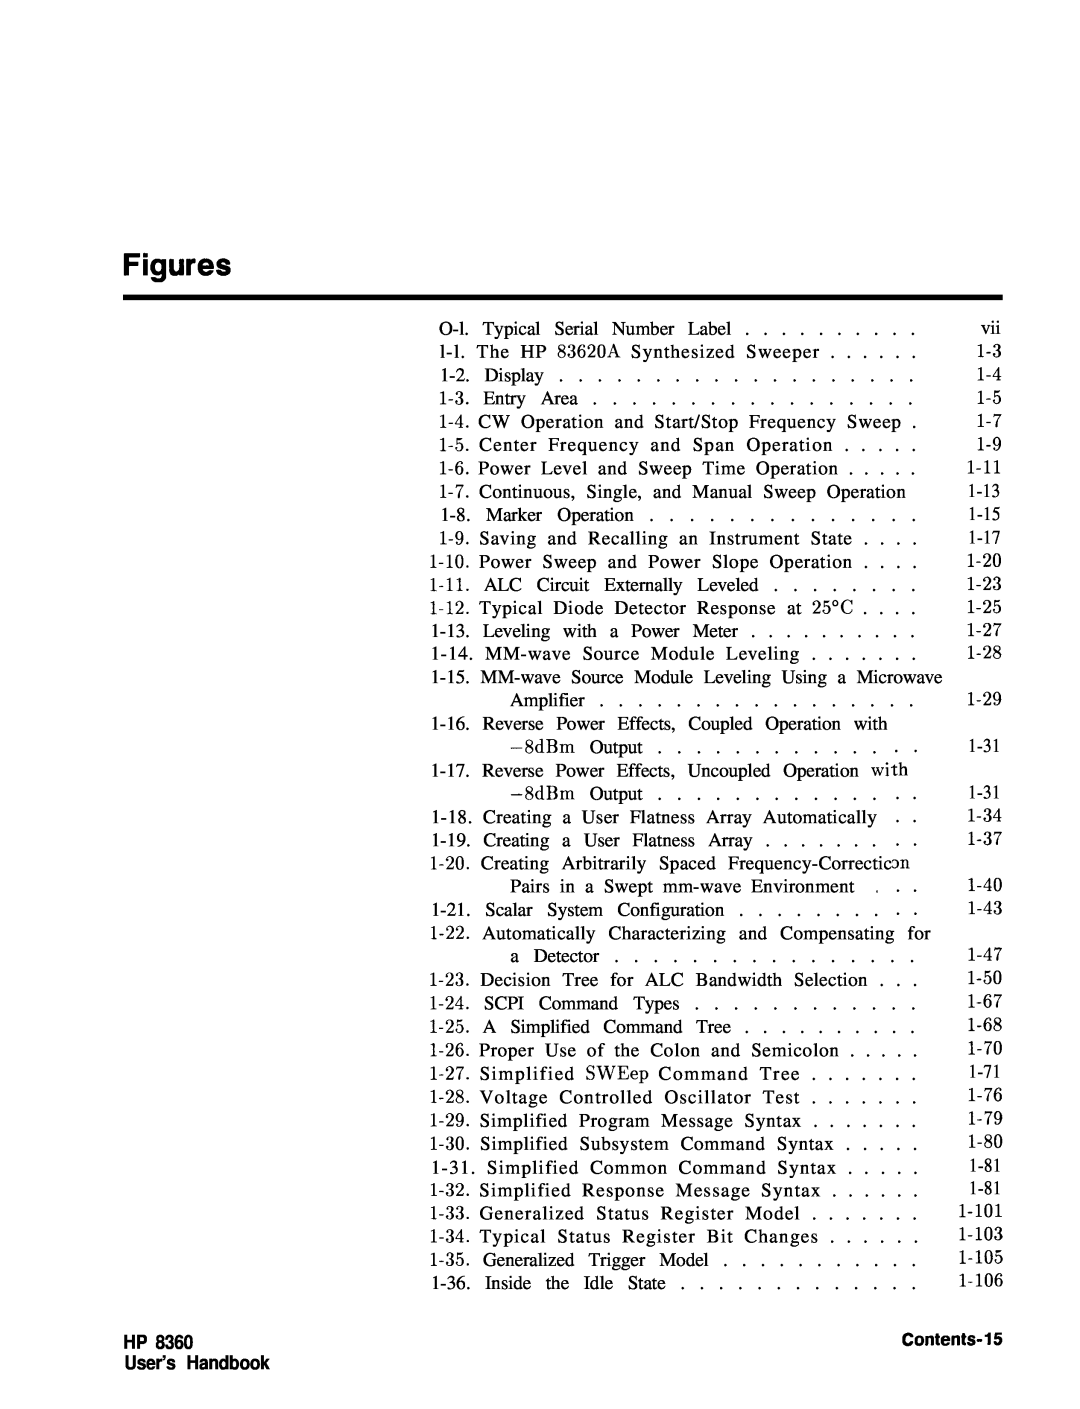 HP 24A, 83620A, 22A manual Figures, HP User’s Handbook, Contents-15 